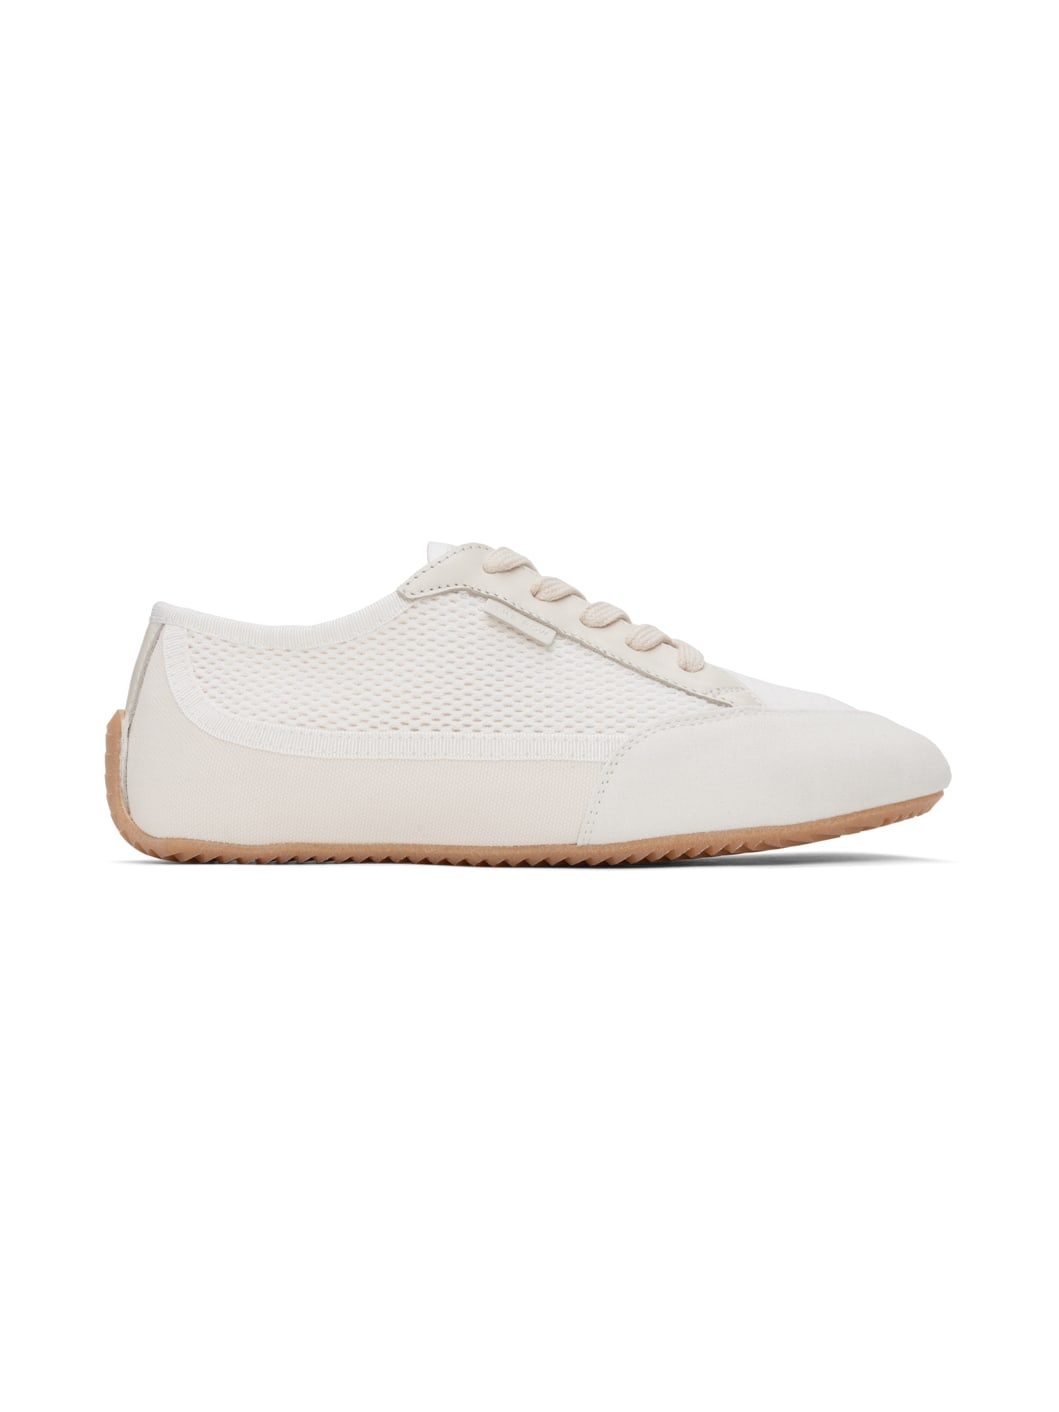 Off-White & White Bonnie Sneakers - 1